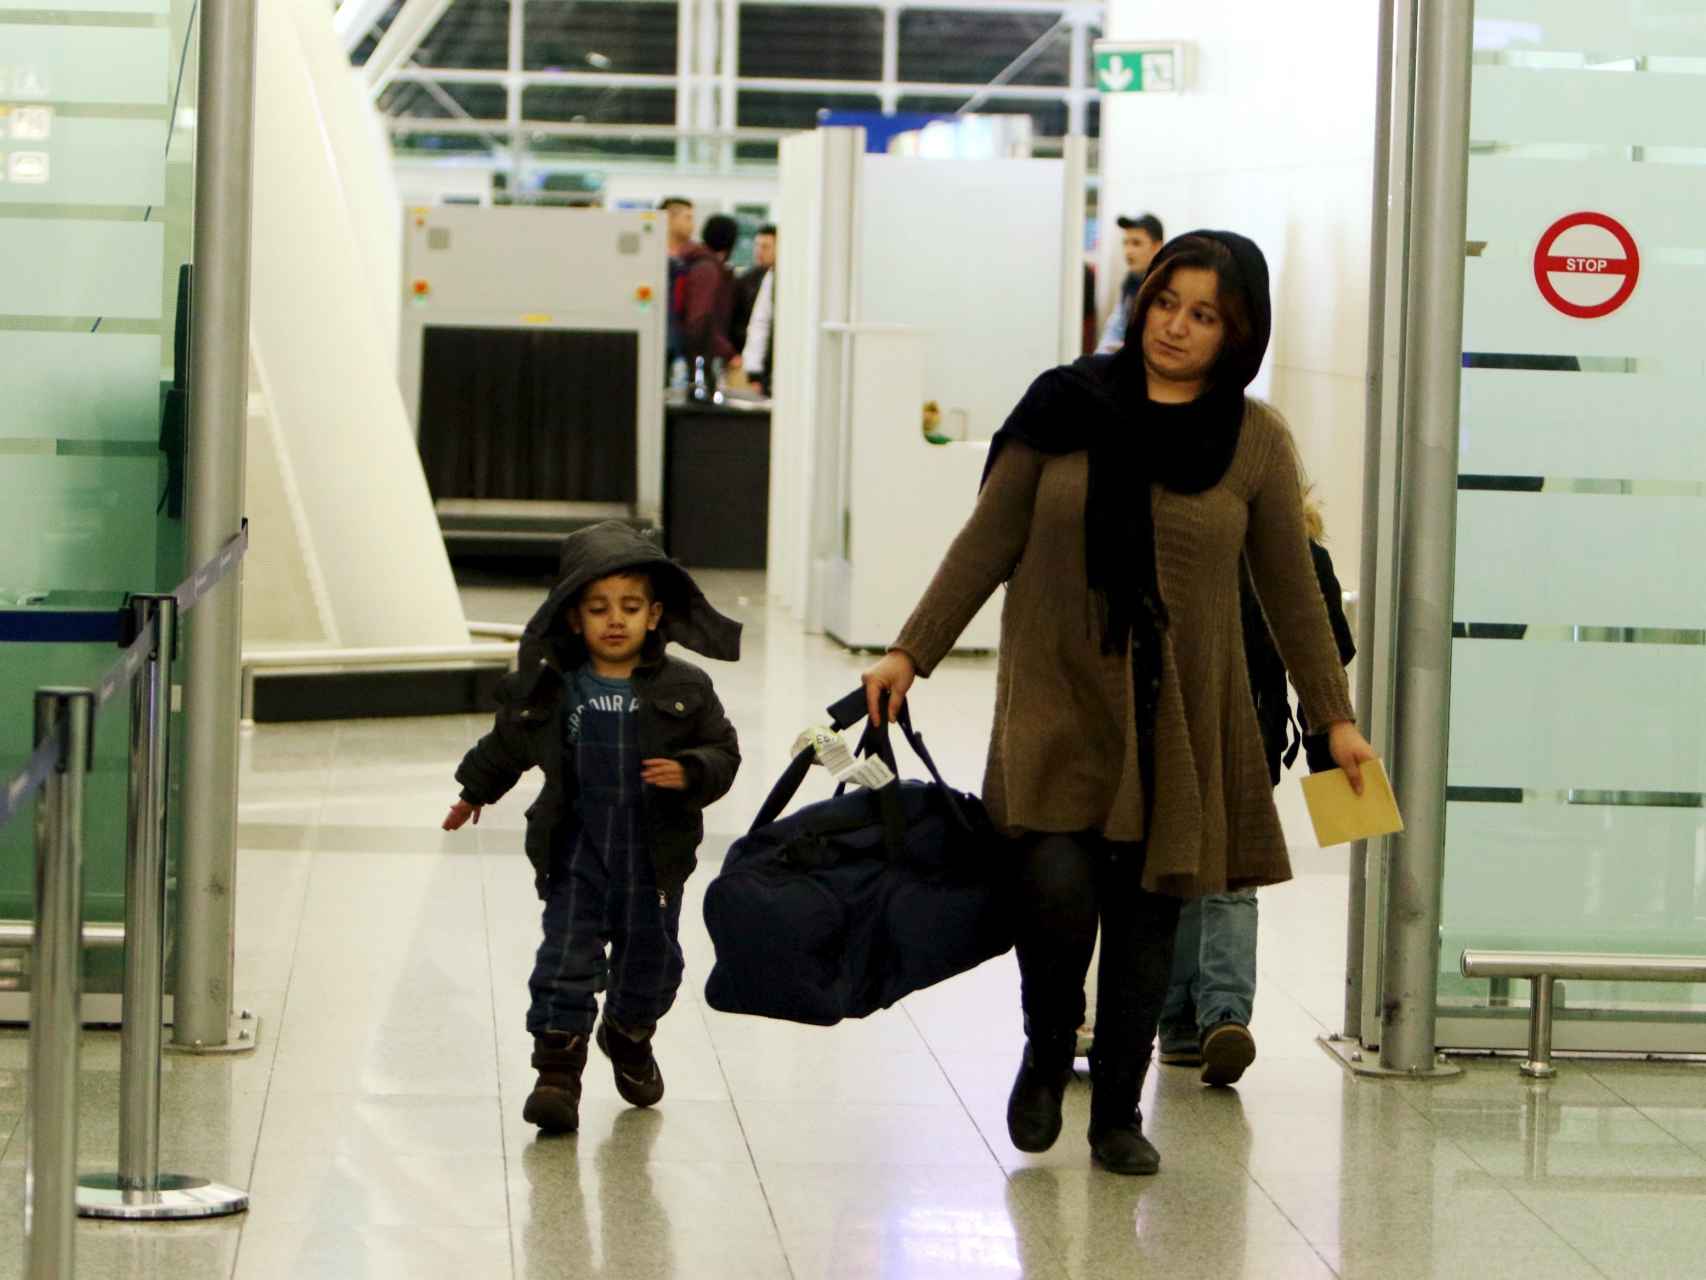 Solicitantes de asilo regresan a Irak, hartos de la espera en Alemania.